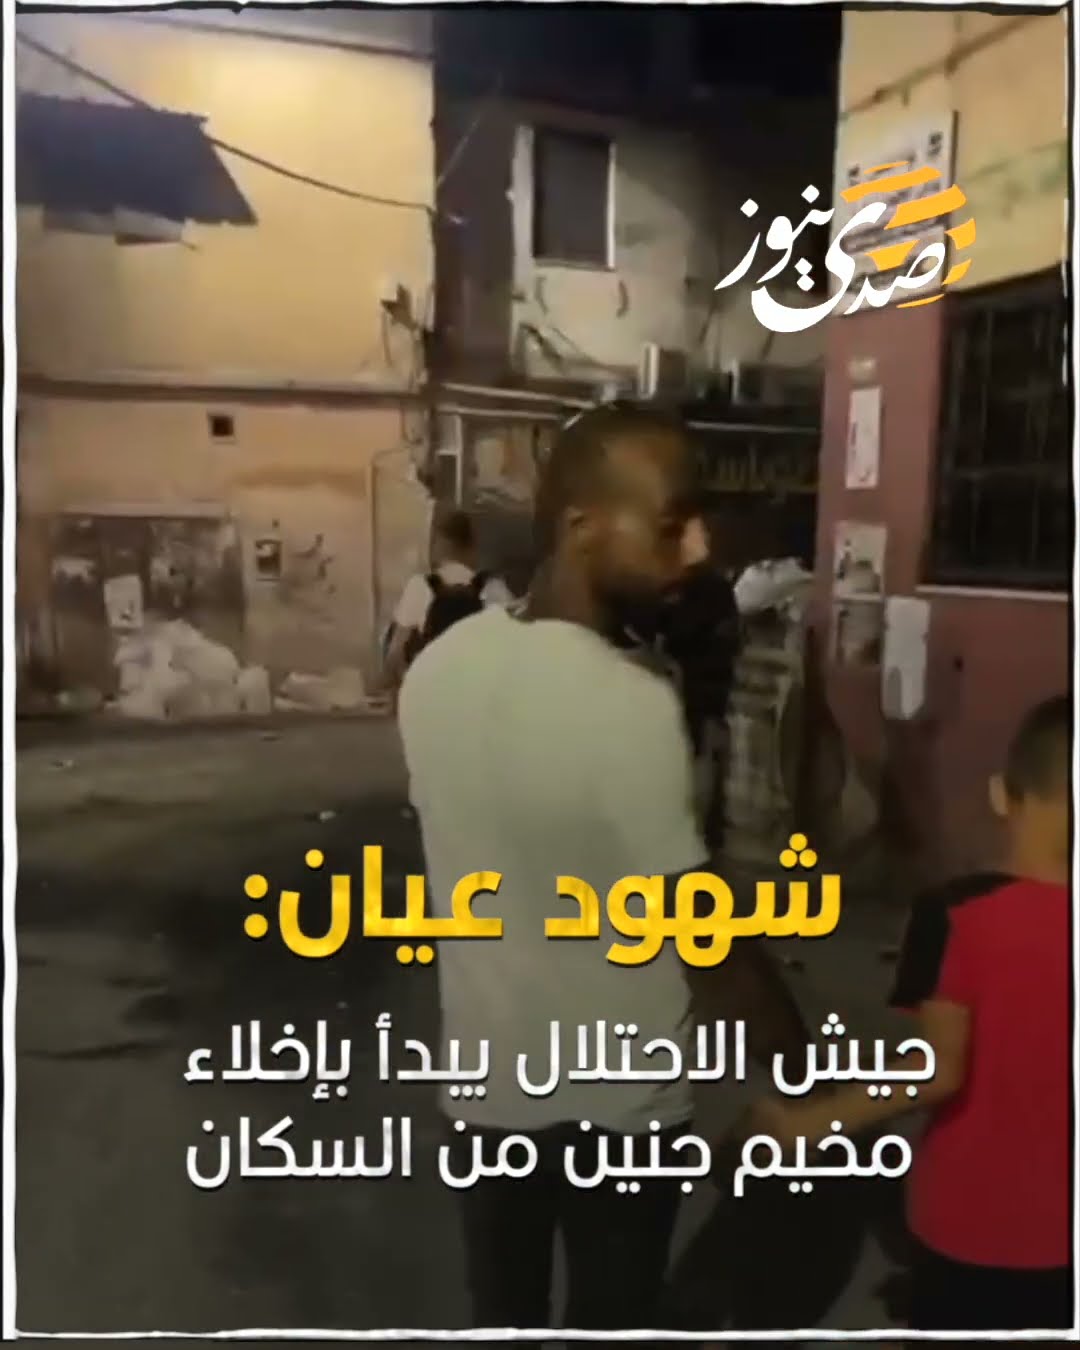 صدى نيوز | شهود عيان: جيش الاحتلال يبدأ بإخلاء مخيم جنين من السكان